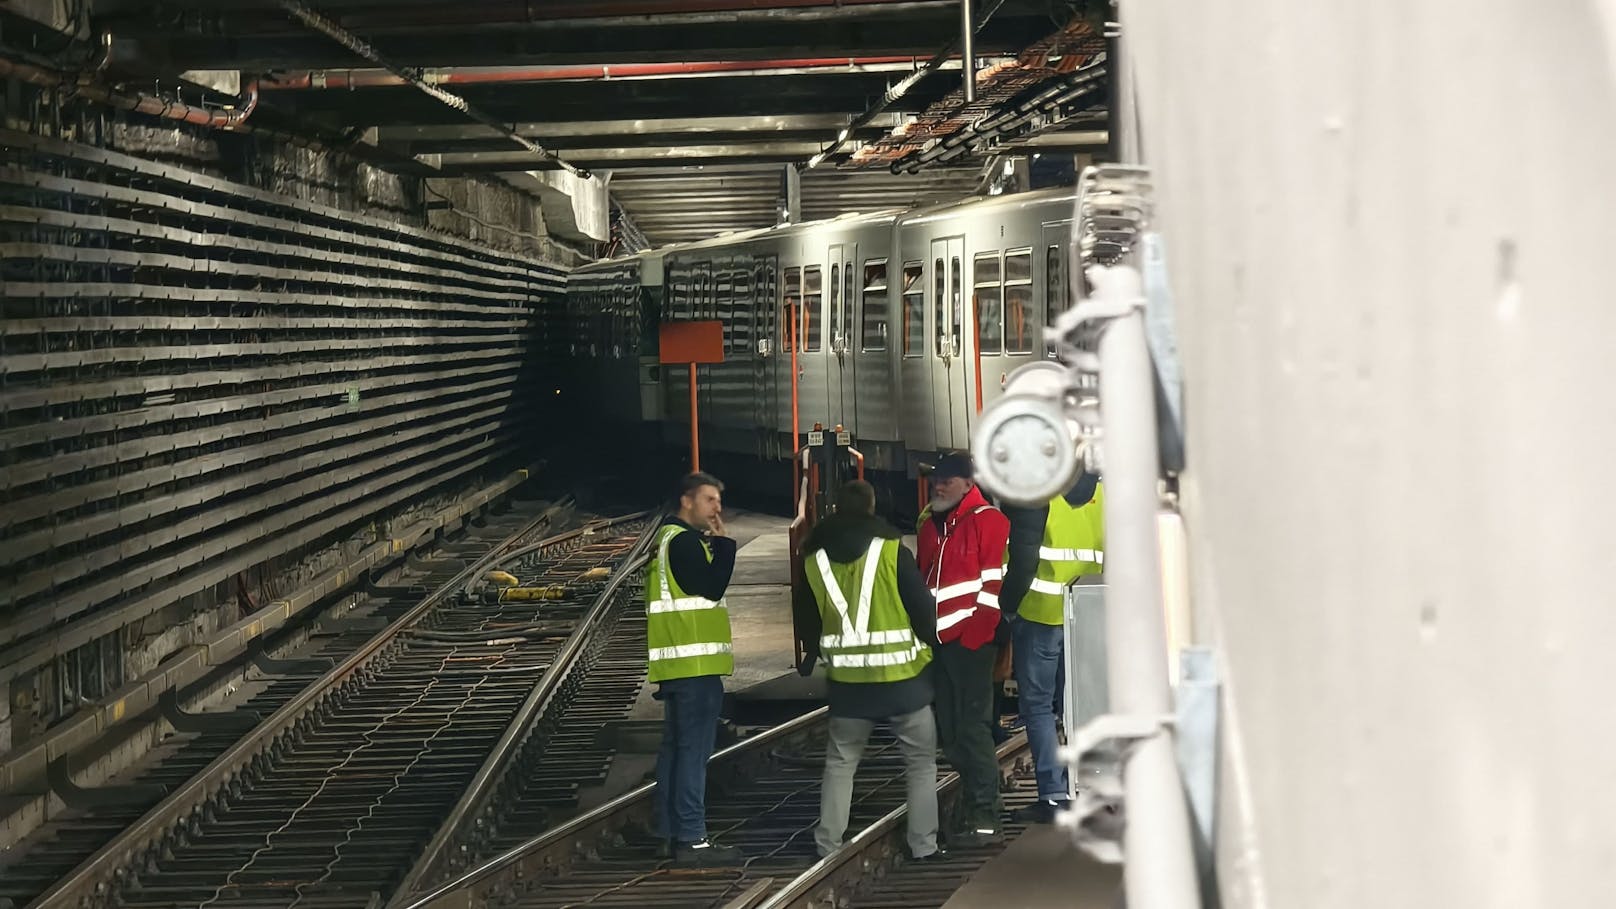 Wie die Wiener Linien bestätigten, wurde der Zug so rasch als möglich evakuiert und alle 120 Passagiere wurden sicher aus dem Tunnel geleitet.